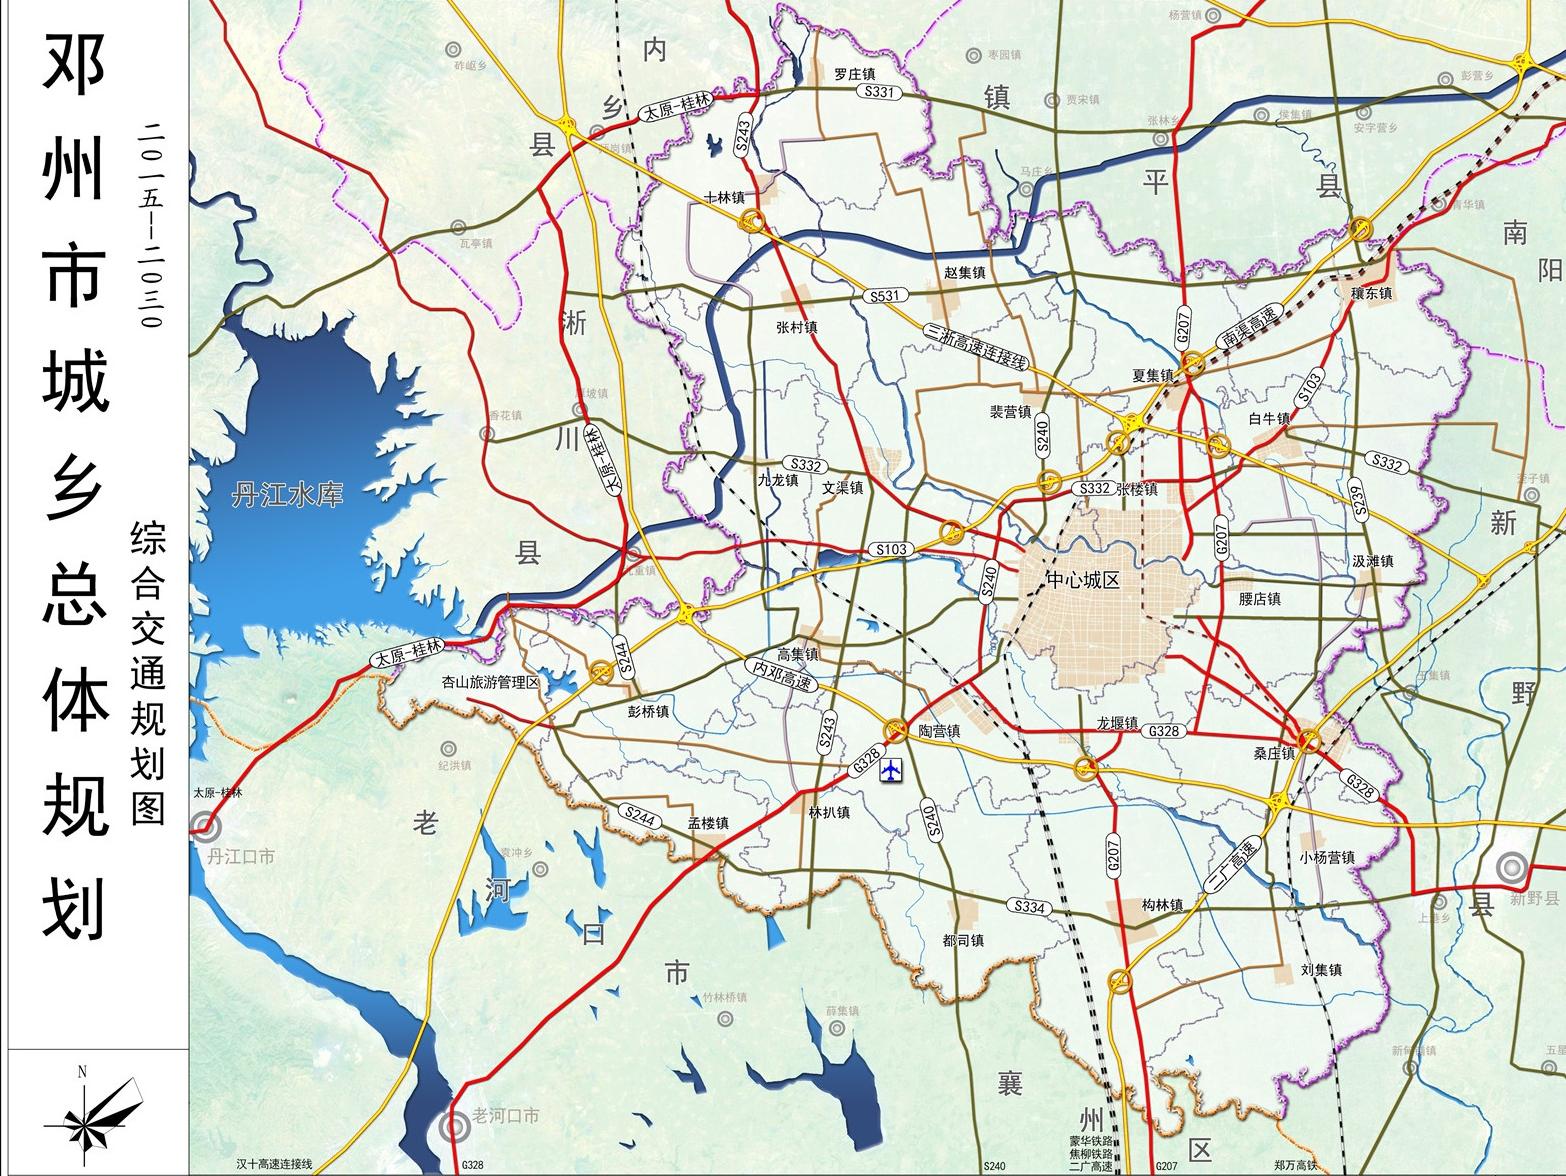 邓州市两条重点公路开工建设,附邓州近期公路规划